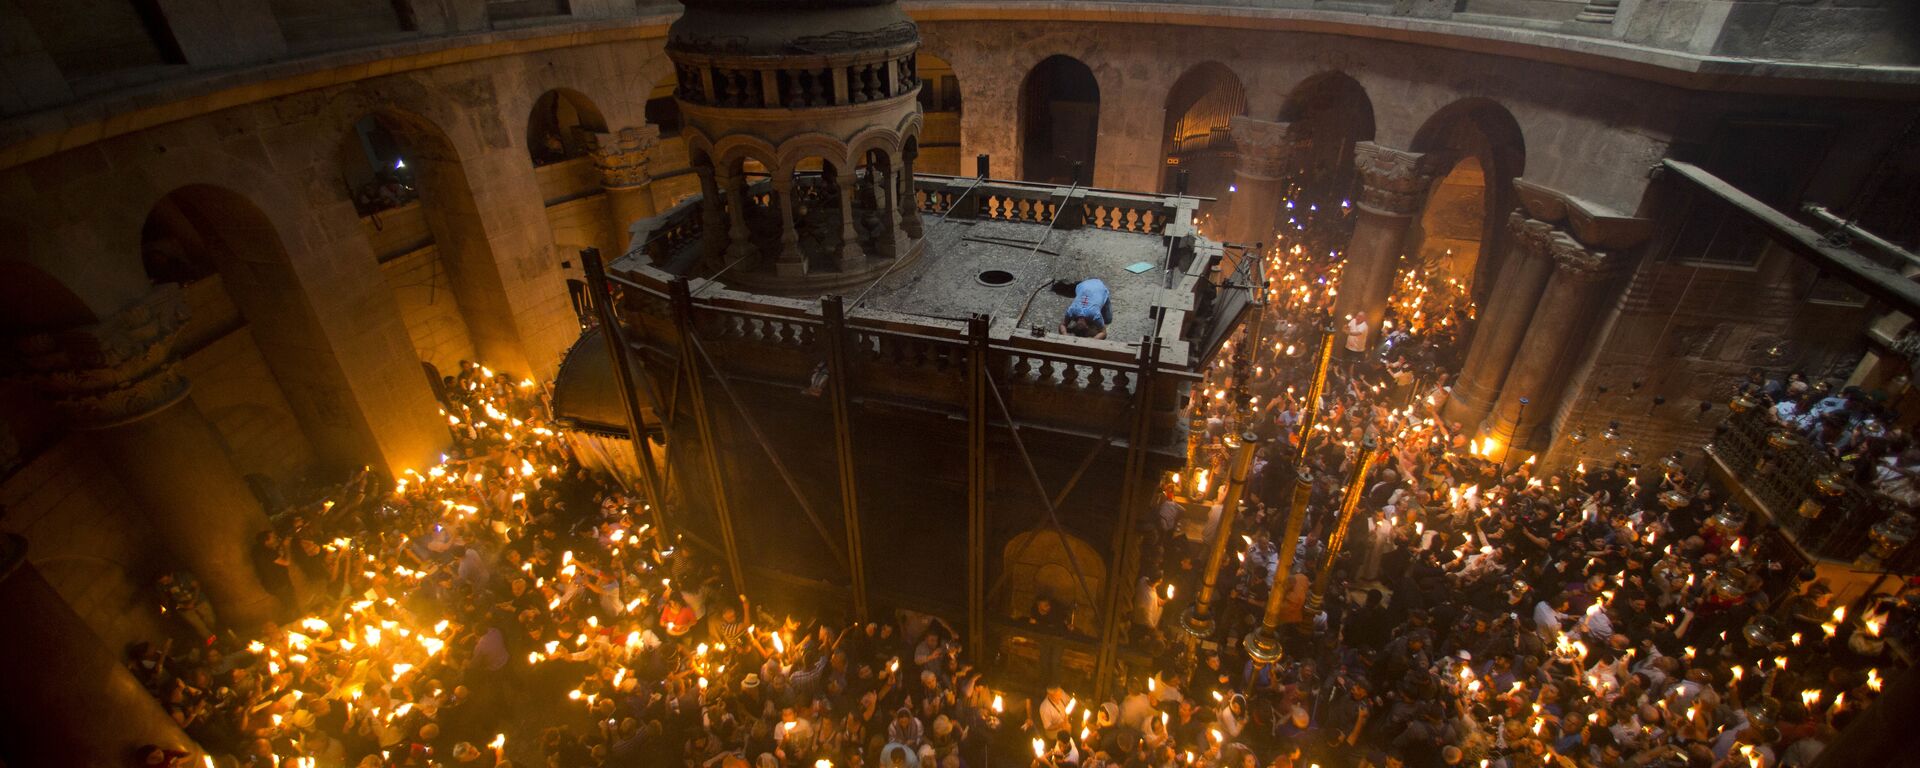 Православные верующие держат свечи в ожидании Благодатного огня в Храме Гроба Господня в Иерусалиме - Sputnik Латвия, 1920, 01.05.2021